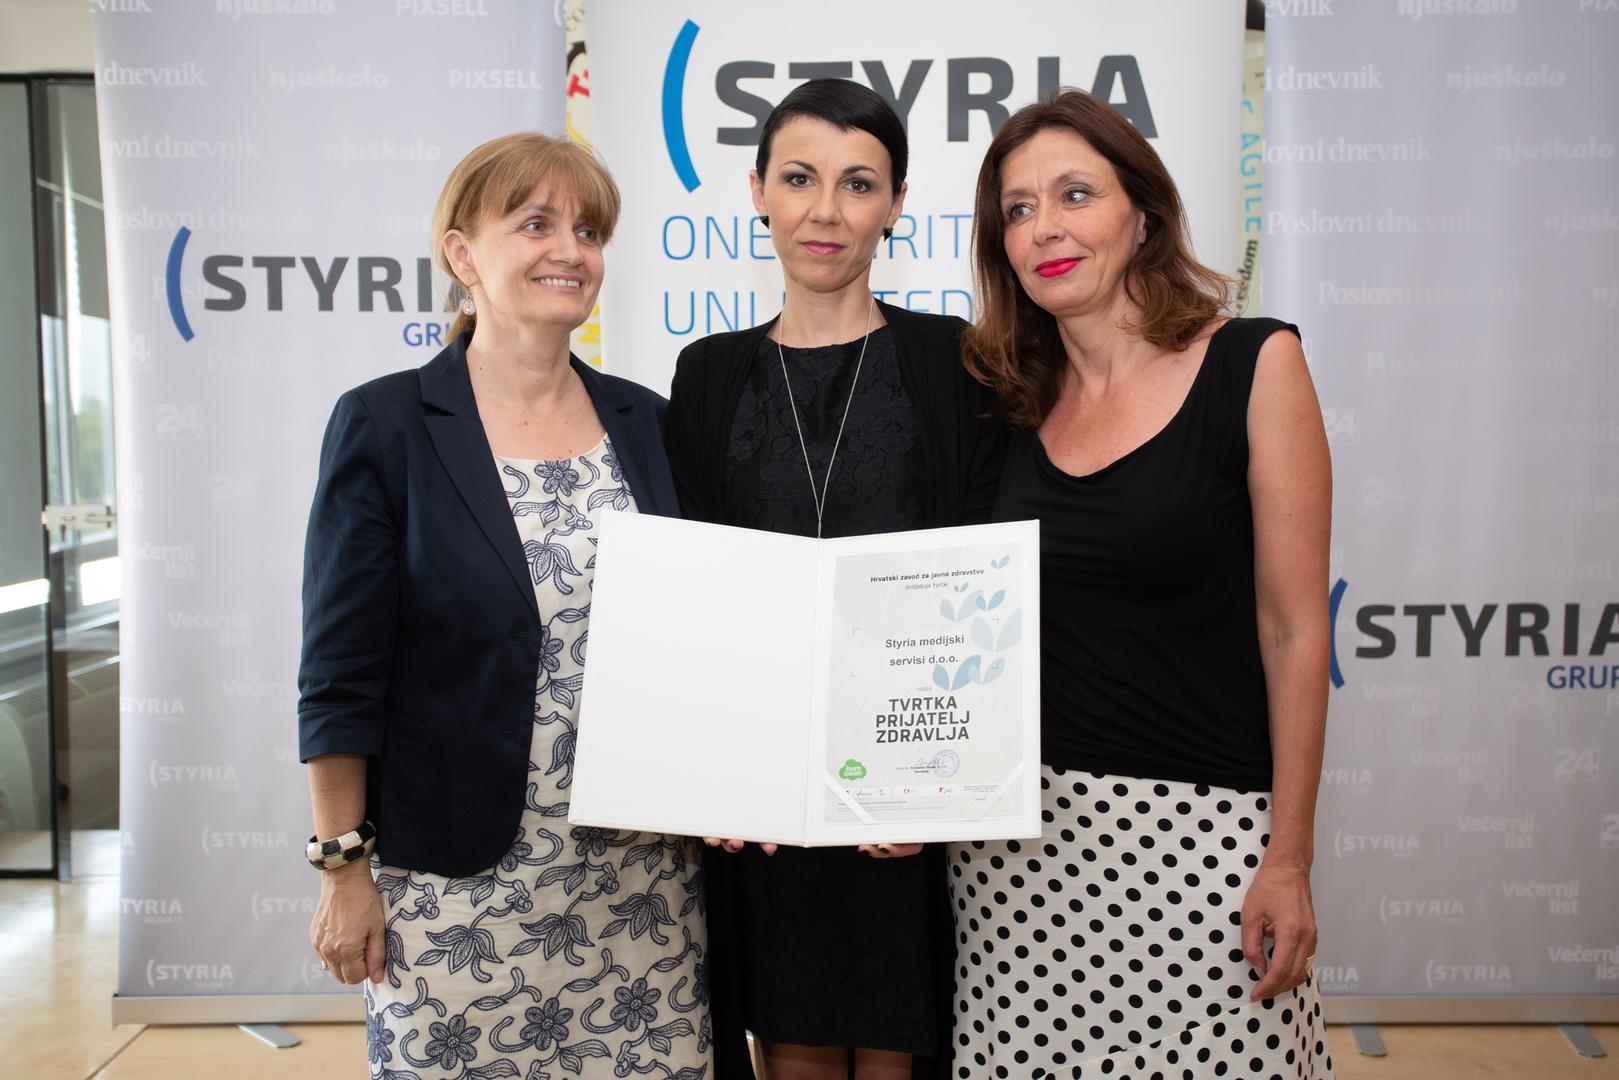 Certifikat je uime Styria grupe preuzela direktorica upravljanja ljudskim potencijalima Ivana Krajinović (u sredini)